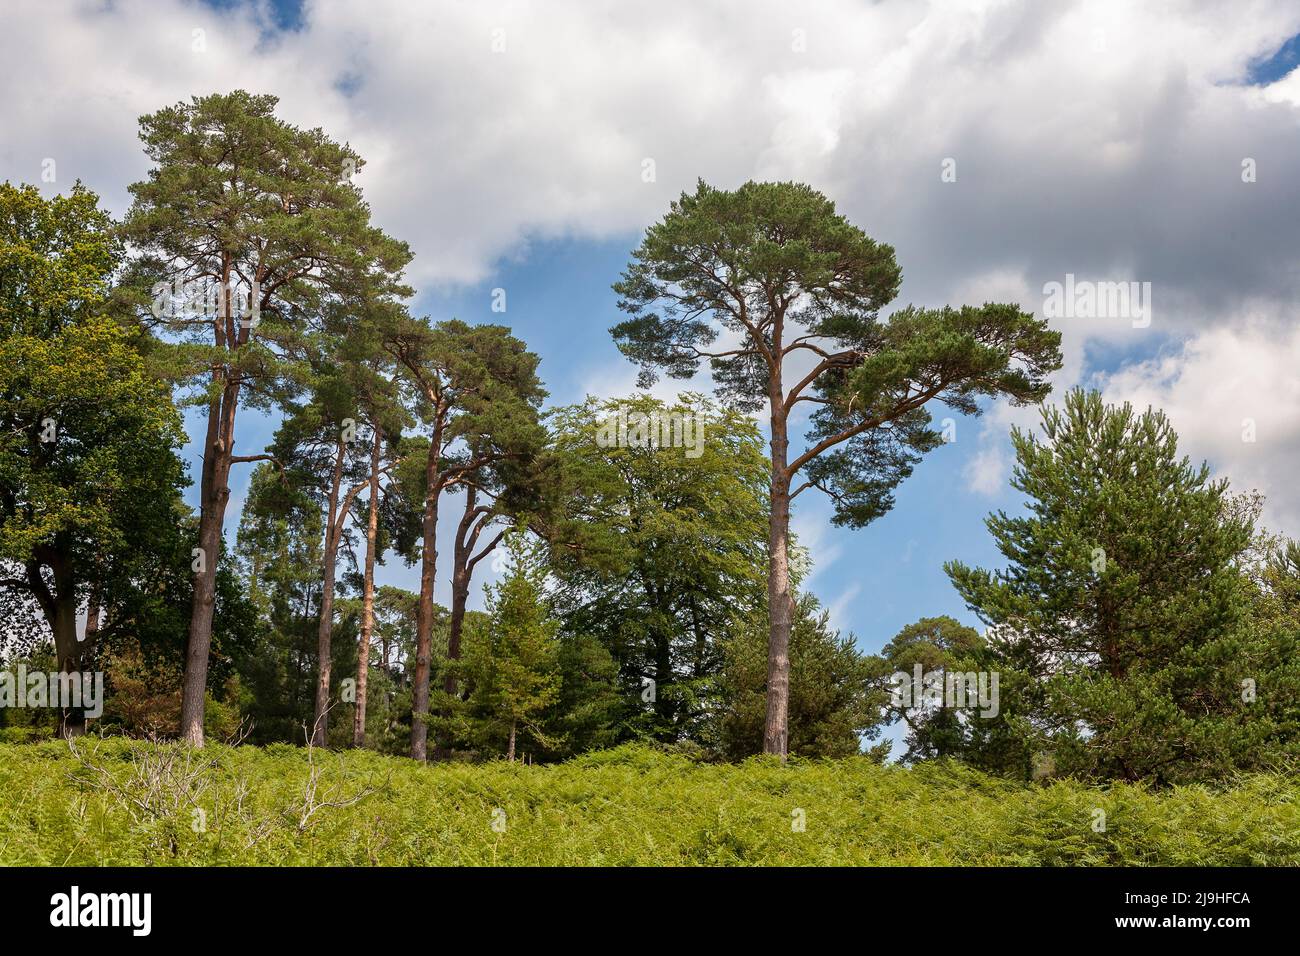 Scots pine in the Deer Park, a wild area of Leonardslee Gardens, West Sussex, UK Stock Photo